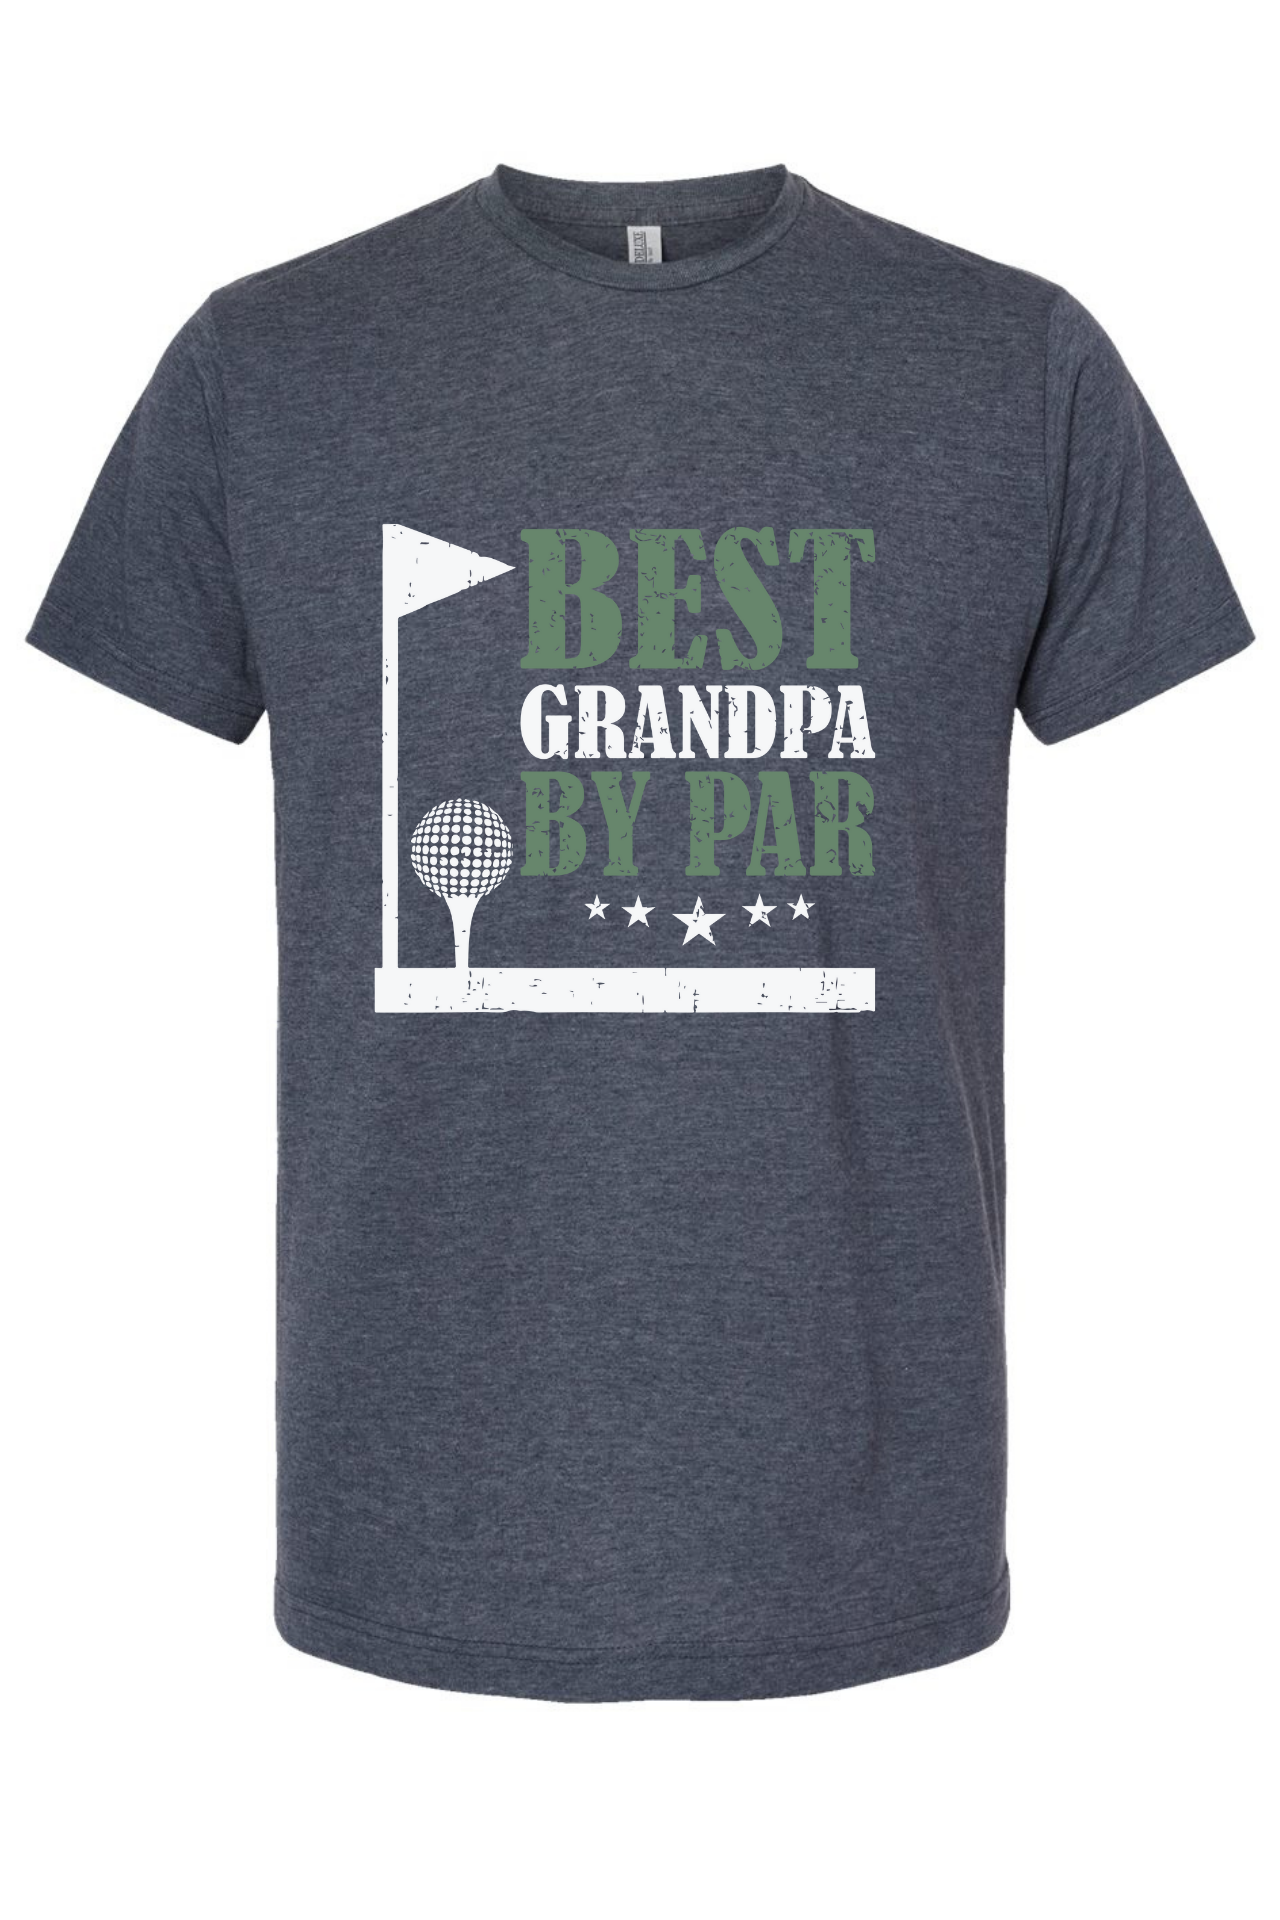 Best Grandpa by Par - deluxe cotton blend tee